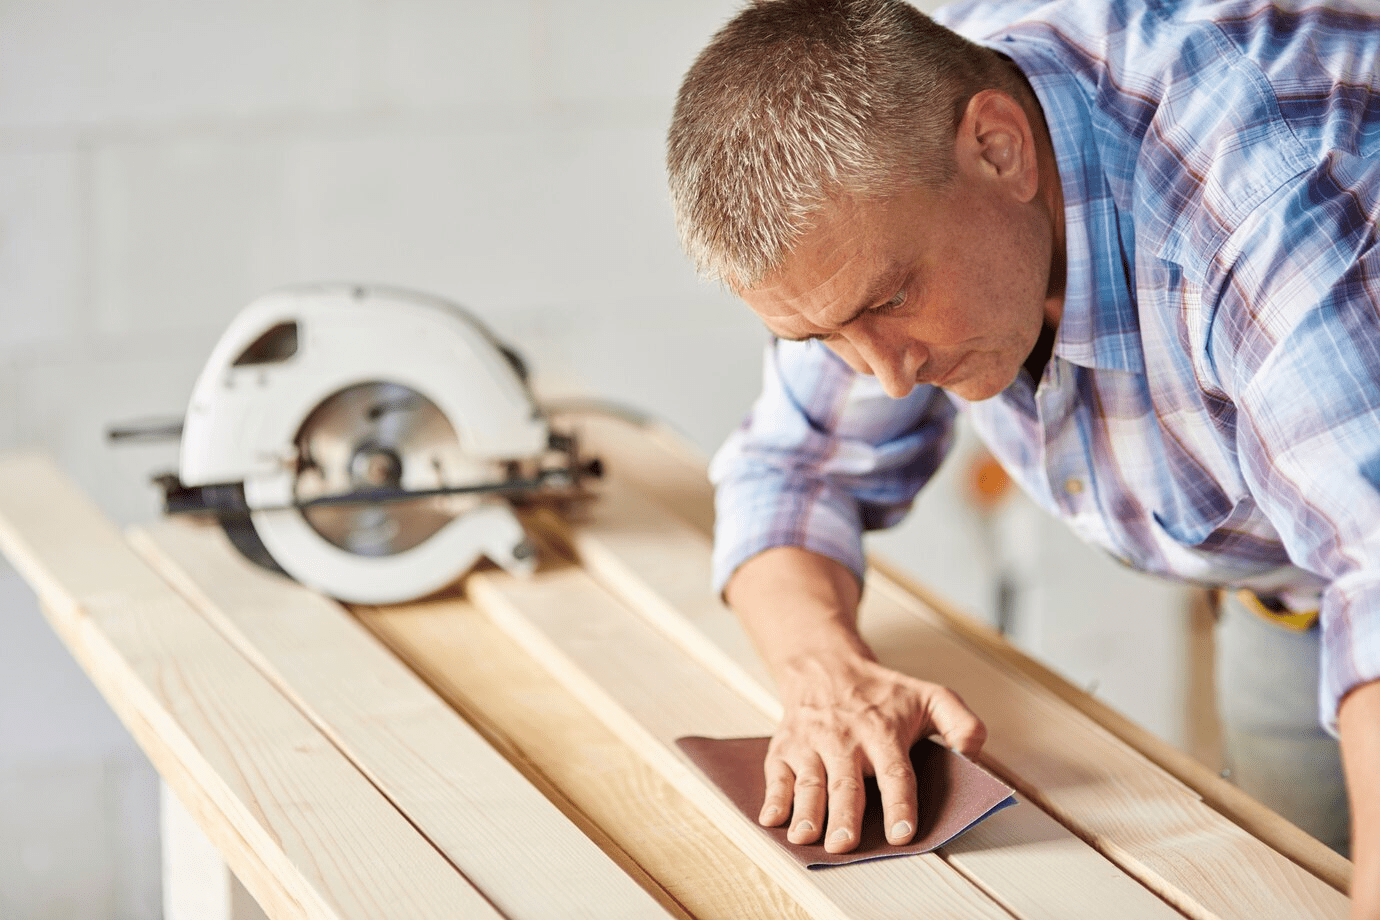 How to Cut Laminate Flooring